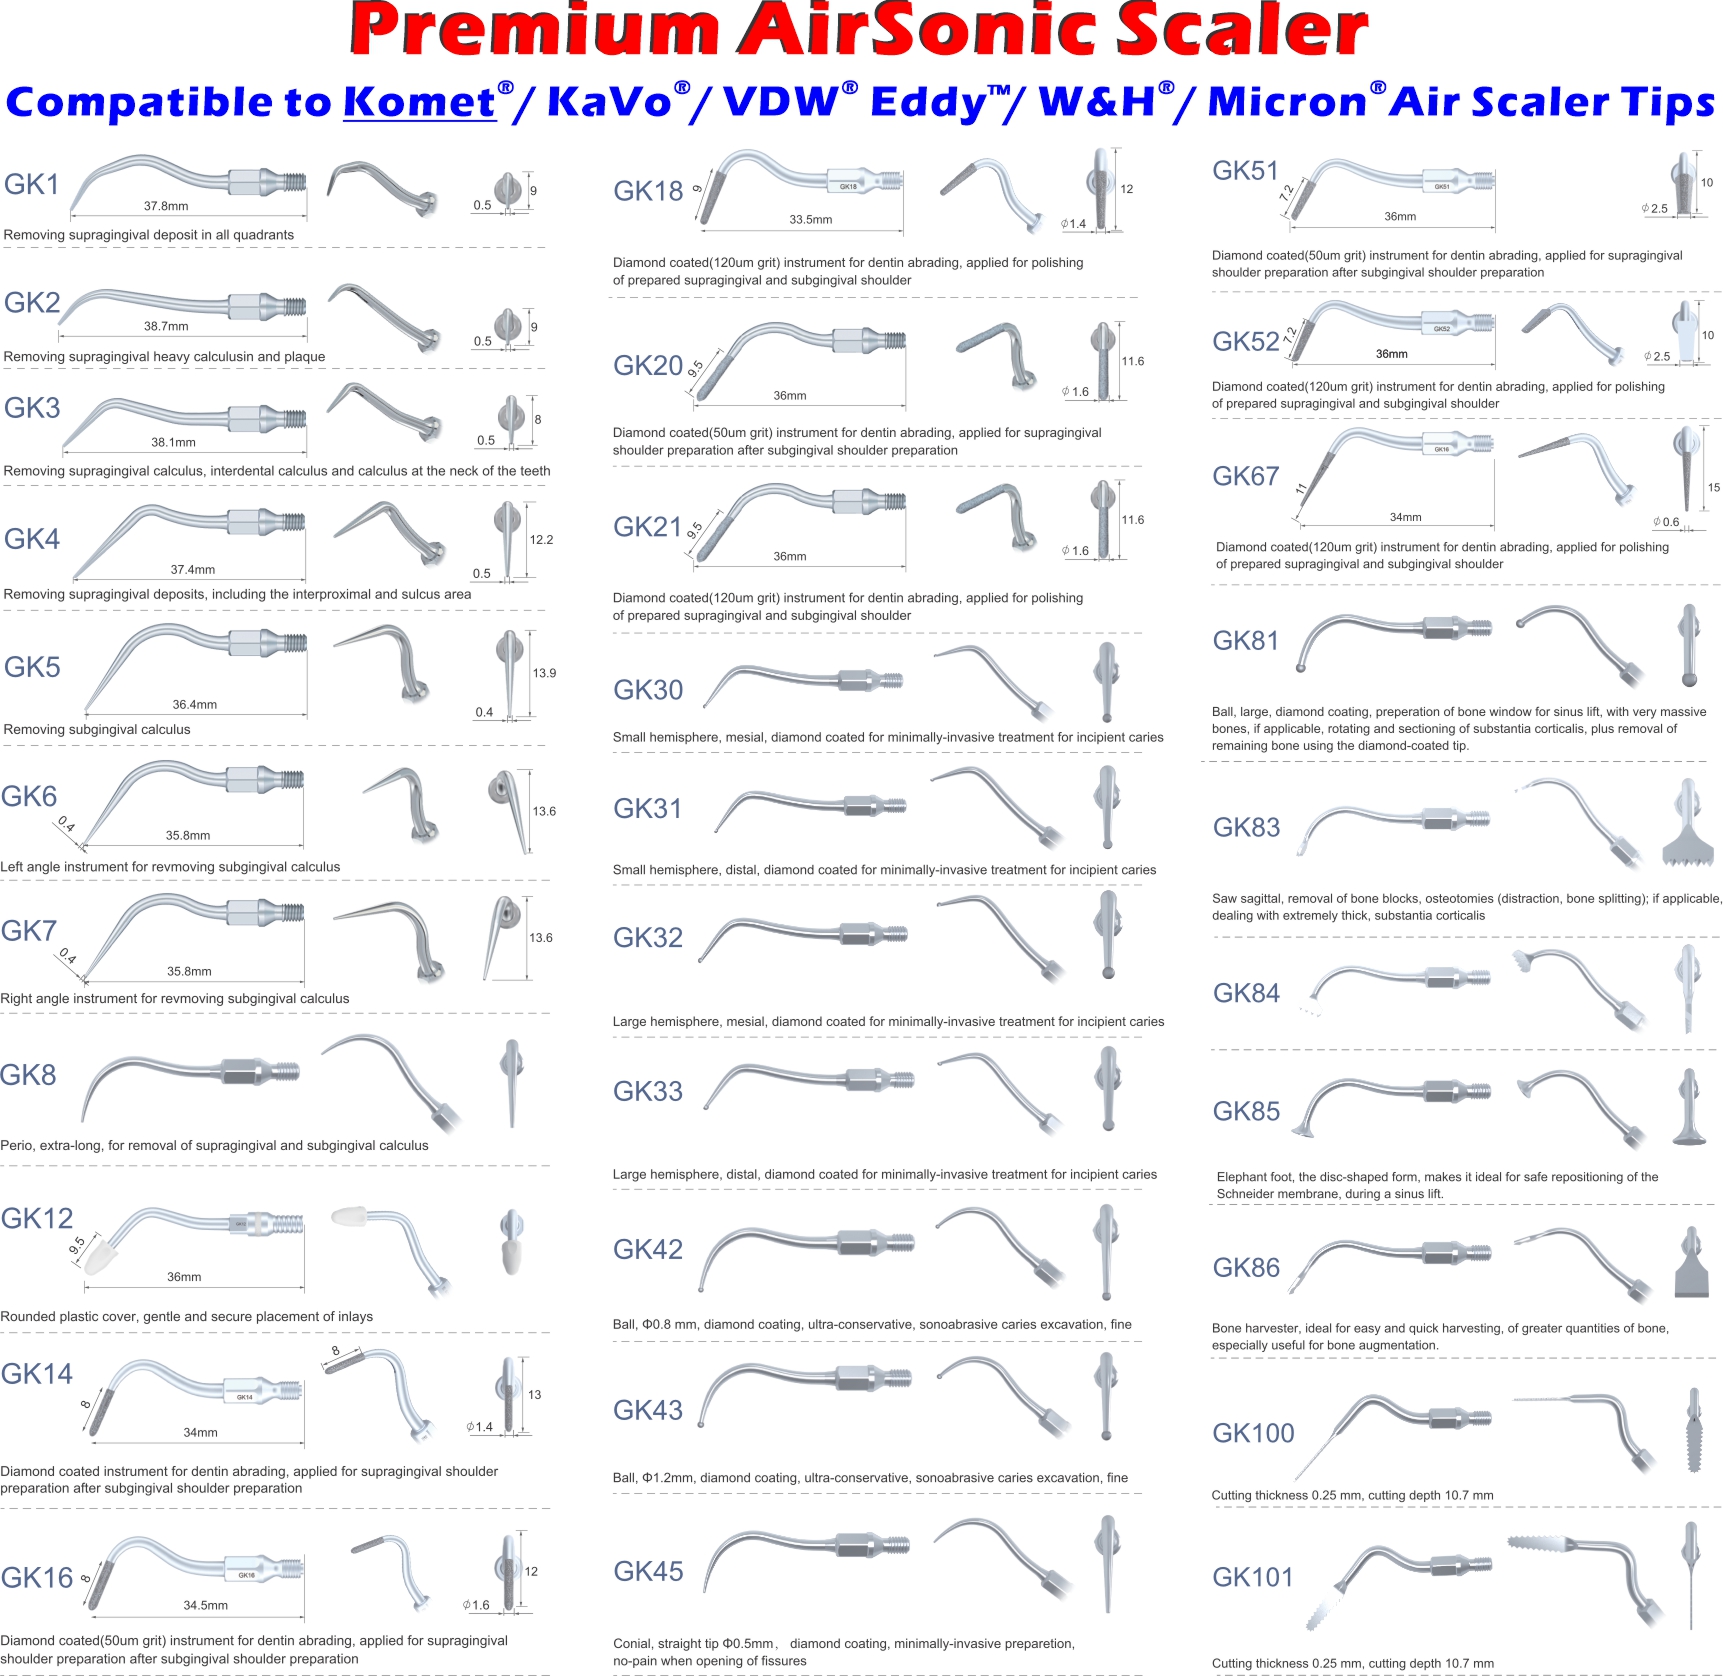 Premium AirSonic Scaler Tips Book